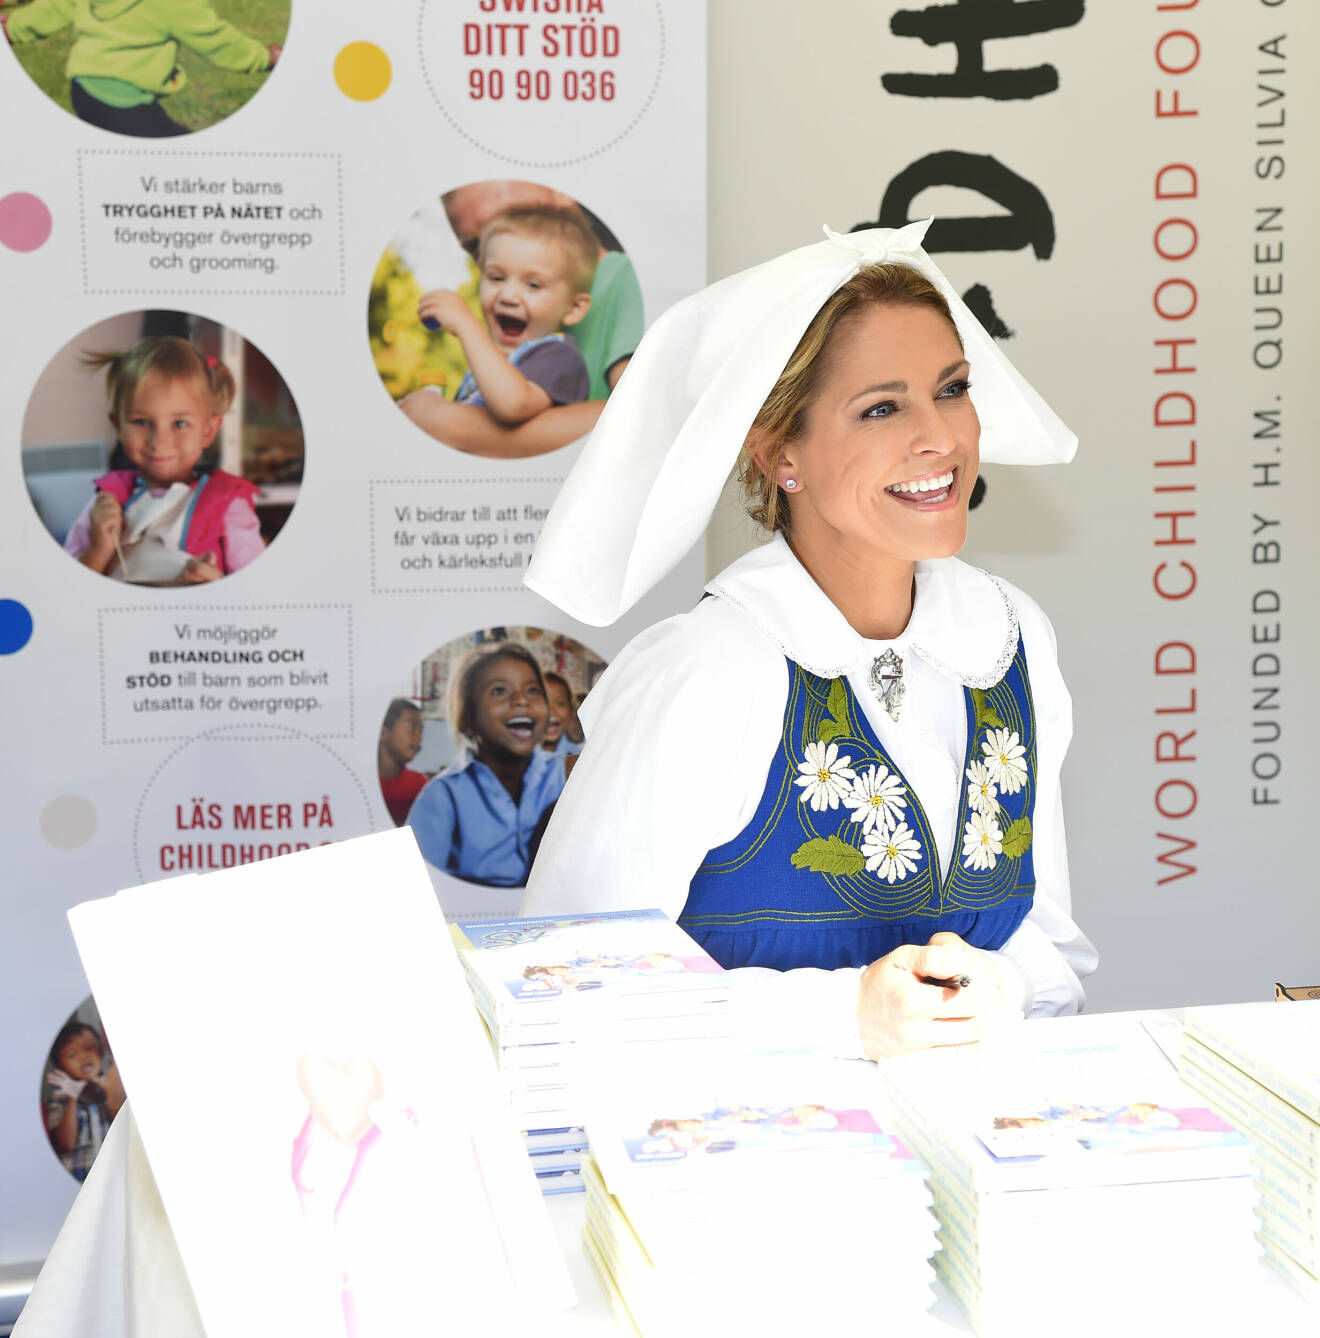 Prinsessan Madeleine signerar sin bok "Stella och hemligheten" till förmån för World Childhood foundation på Kungliga slottet i Stockholm under Sveriges nationaldag 2019